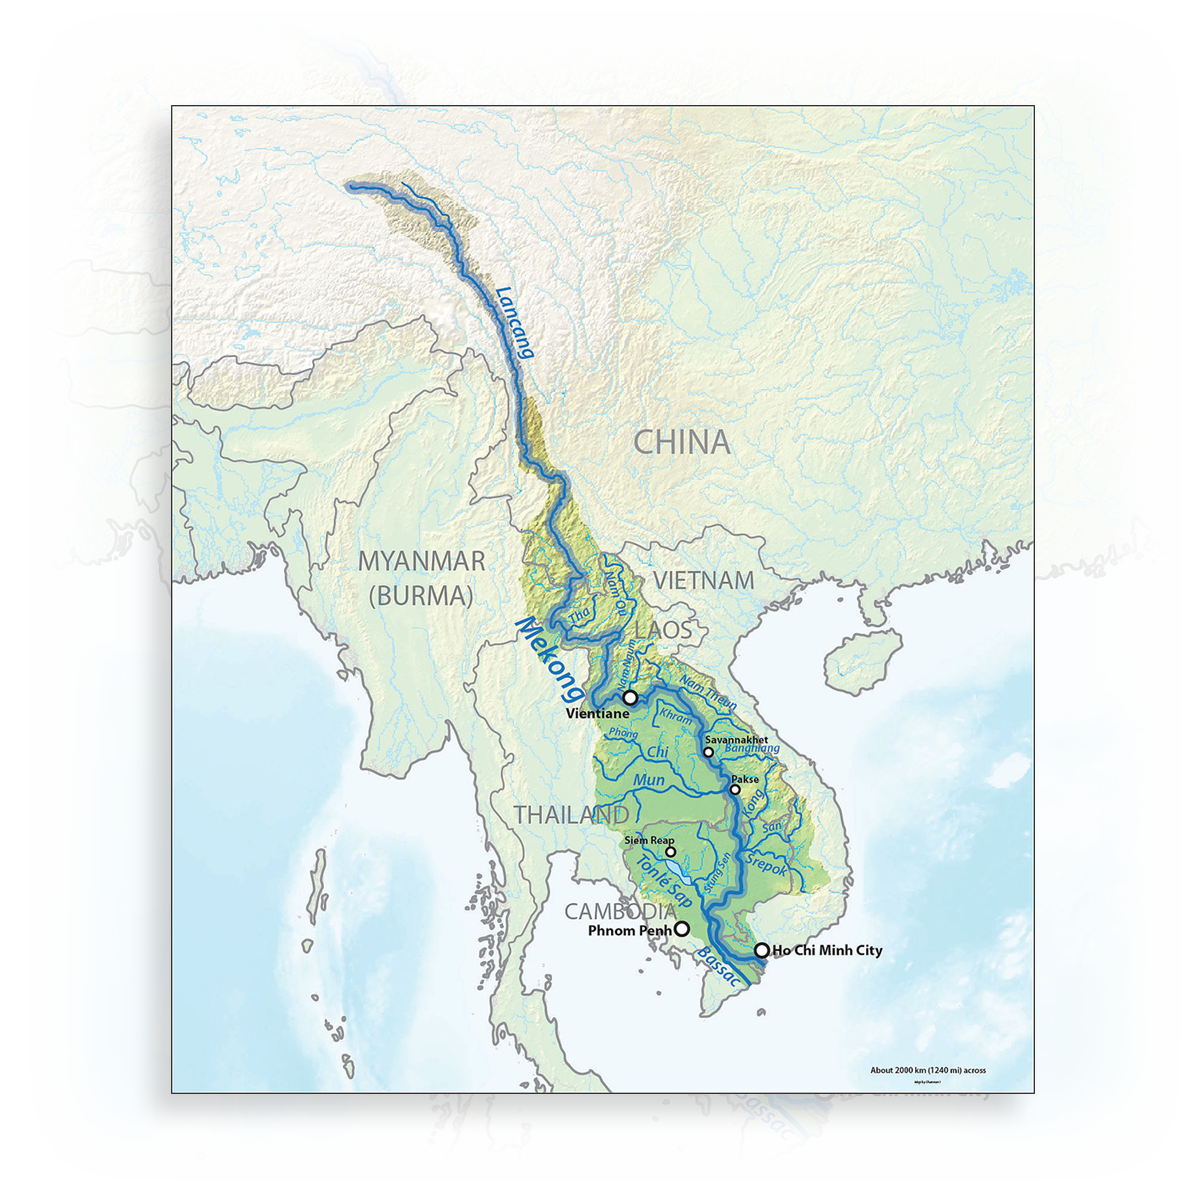 Sông MeKong chảy qua nhiều quốc gia trước khi vào Việt Nam. Ảnh: Tư liệu